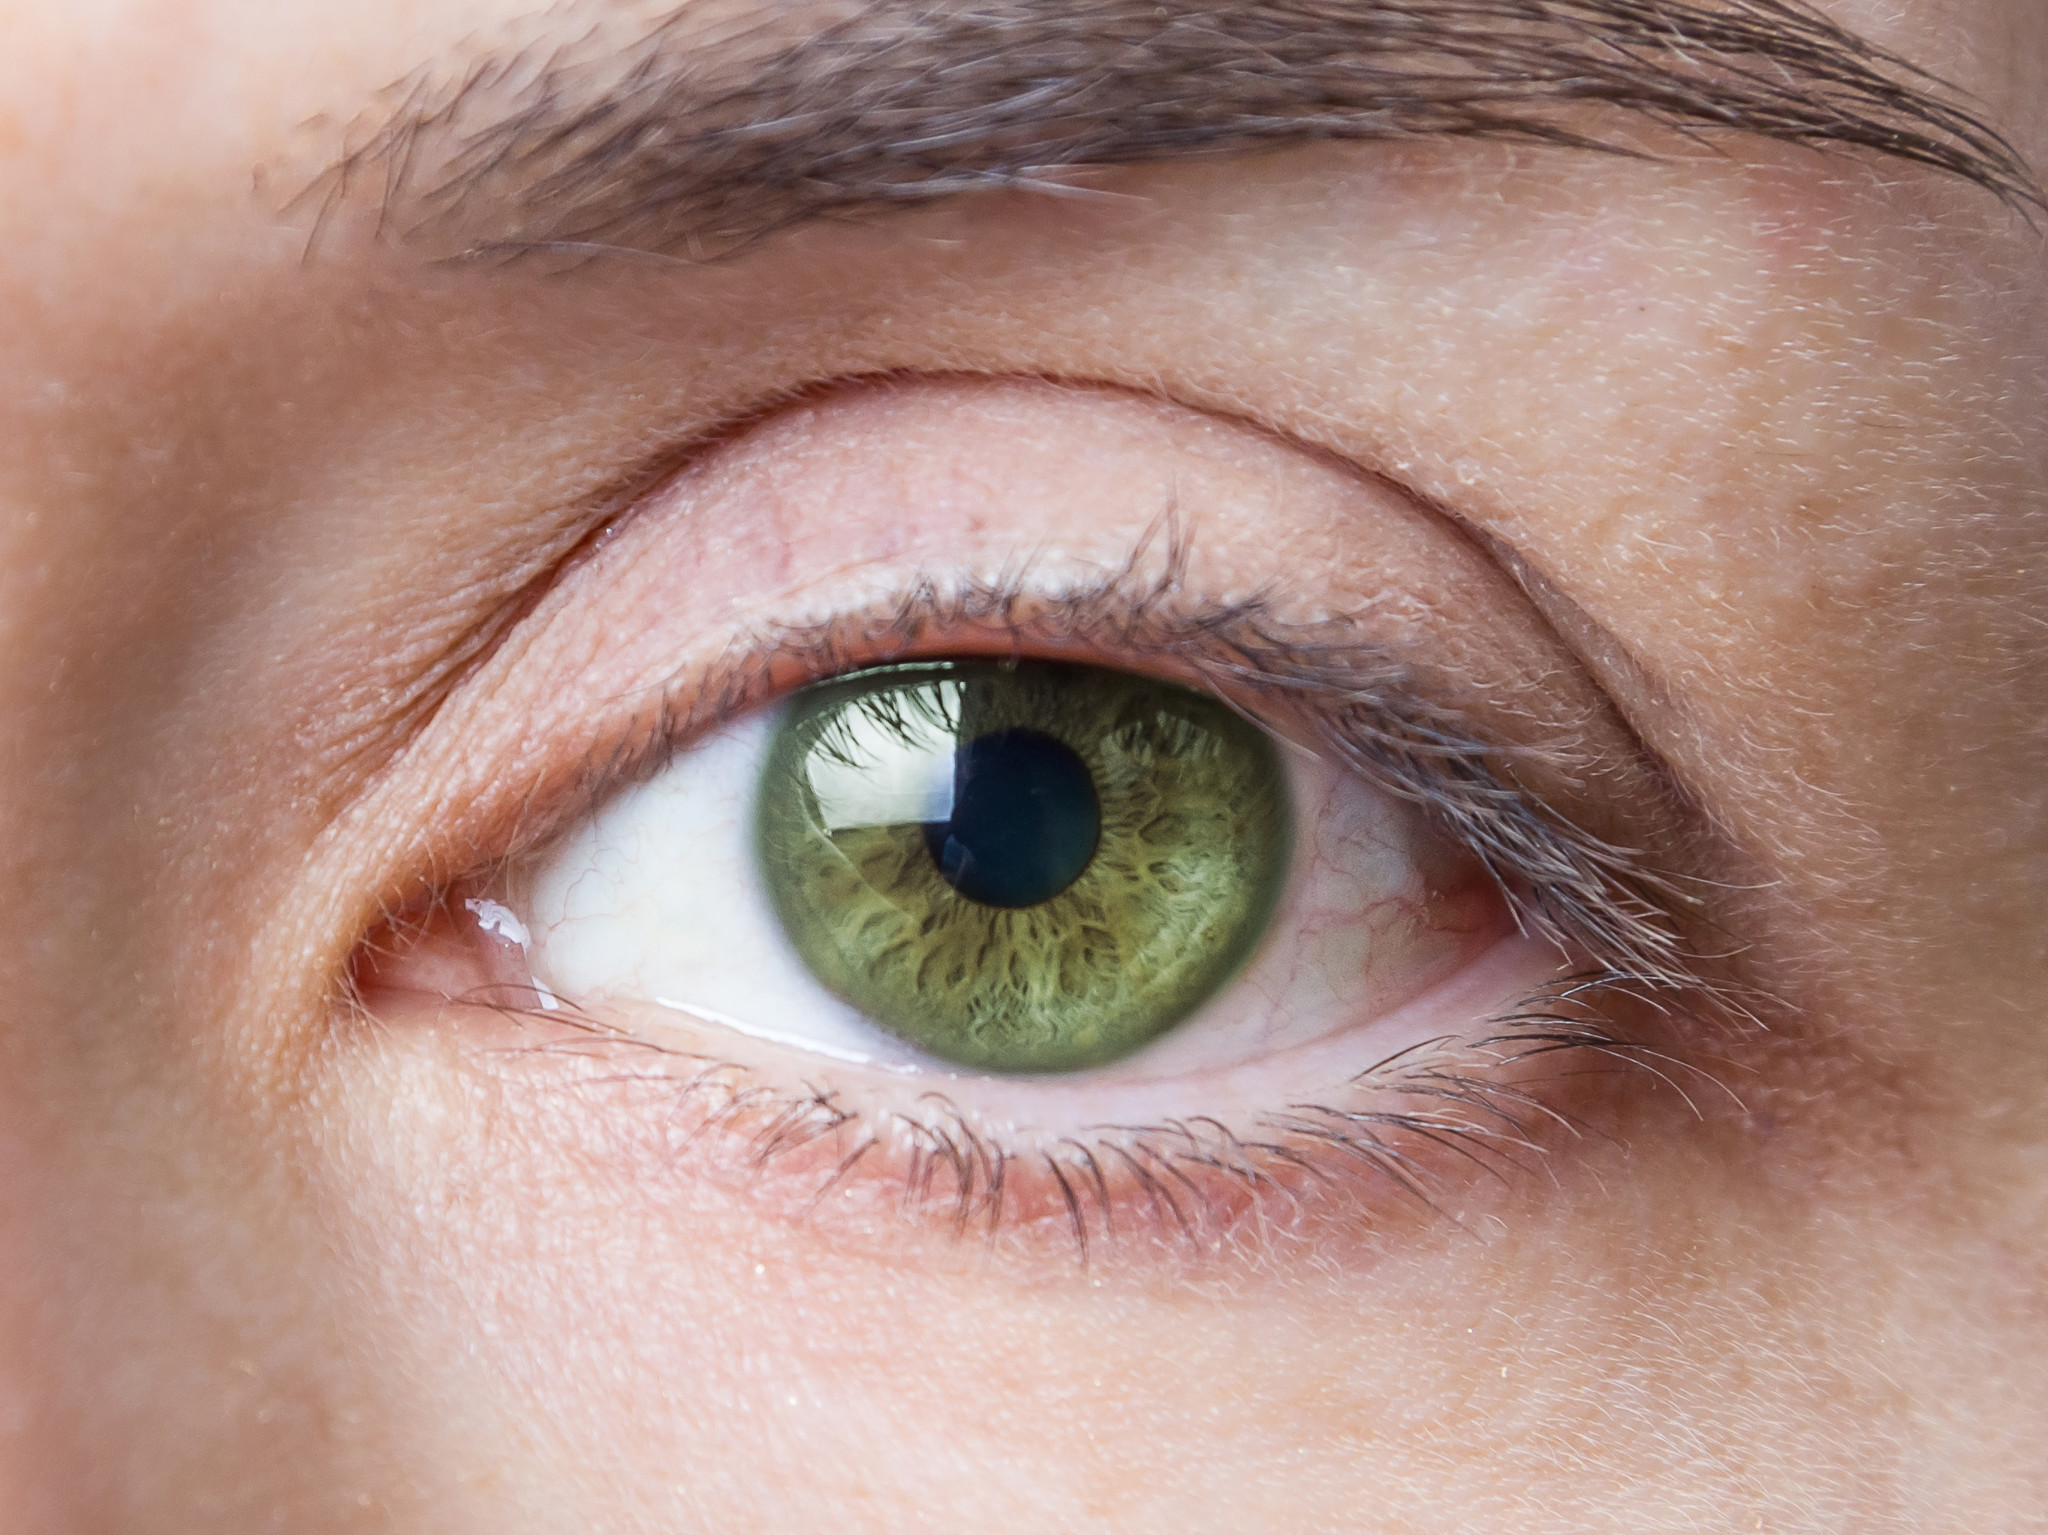 ניתן למנוע את הסיכון לדלקת עיניים לאחר ניתוח קטרקט באמצעות אנטיביוטיקה